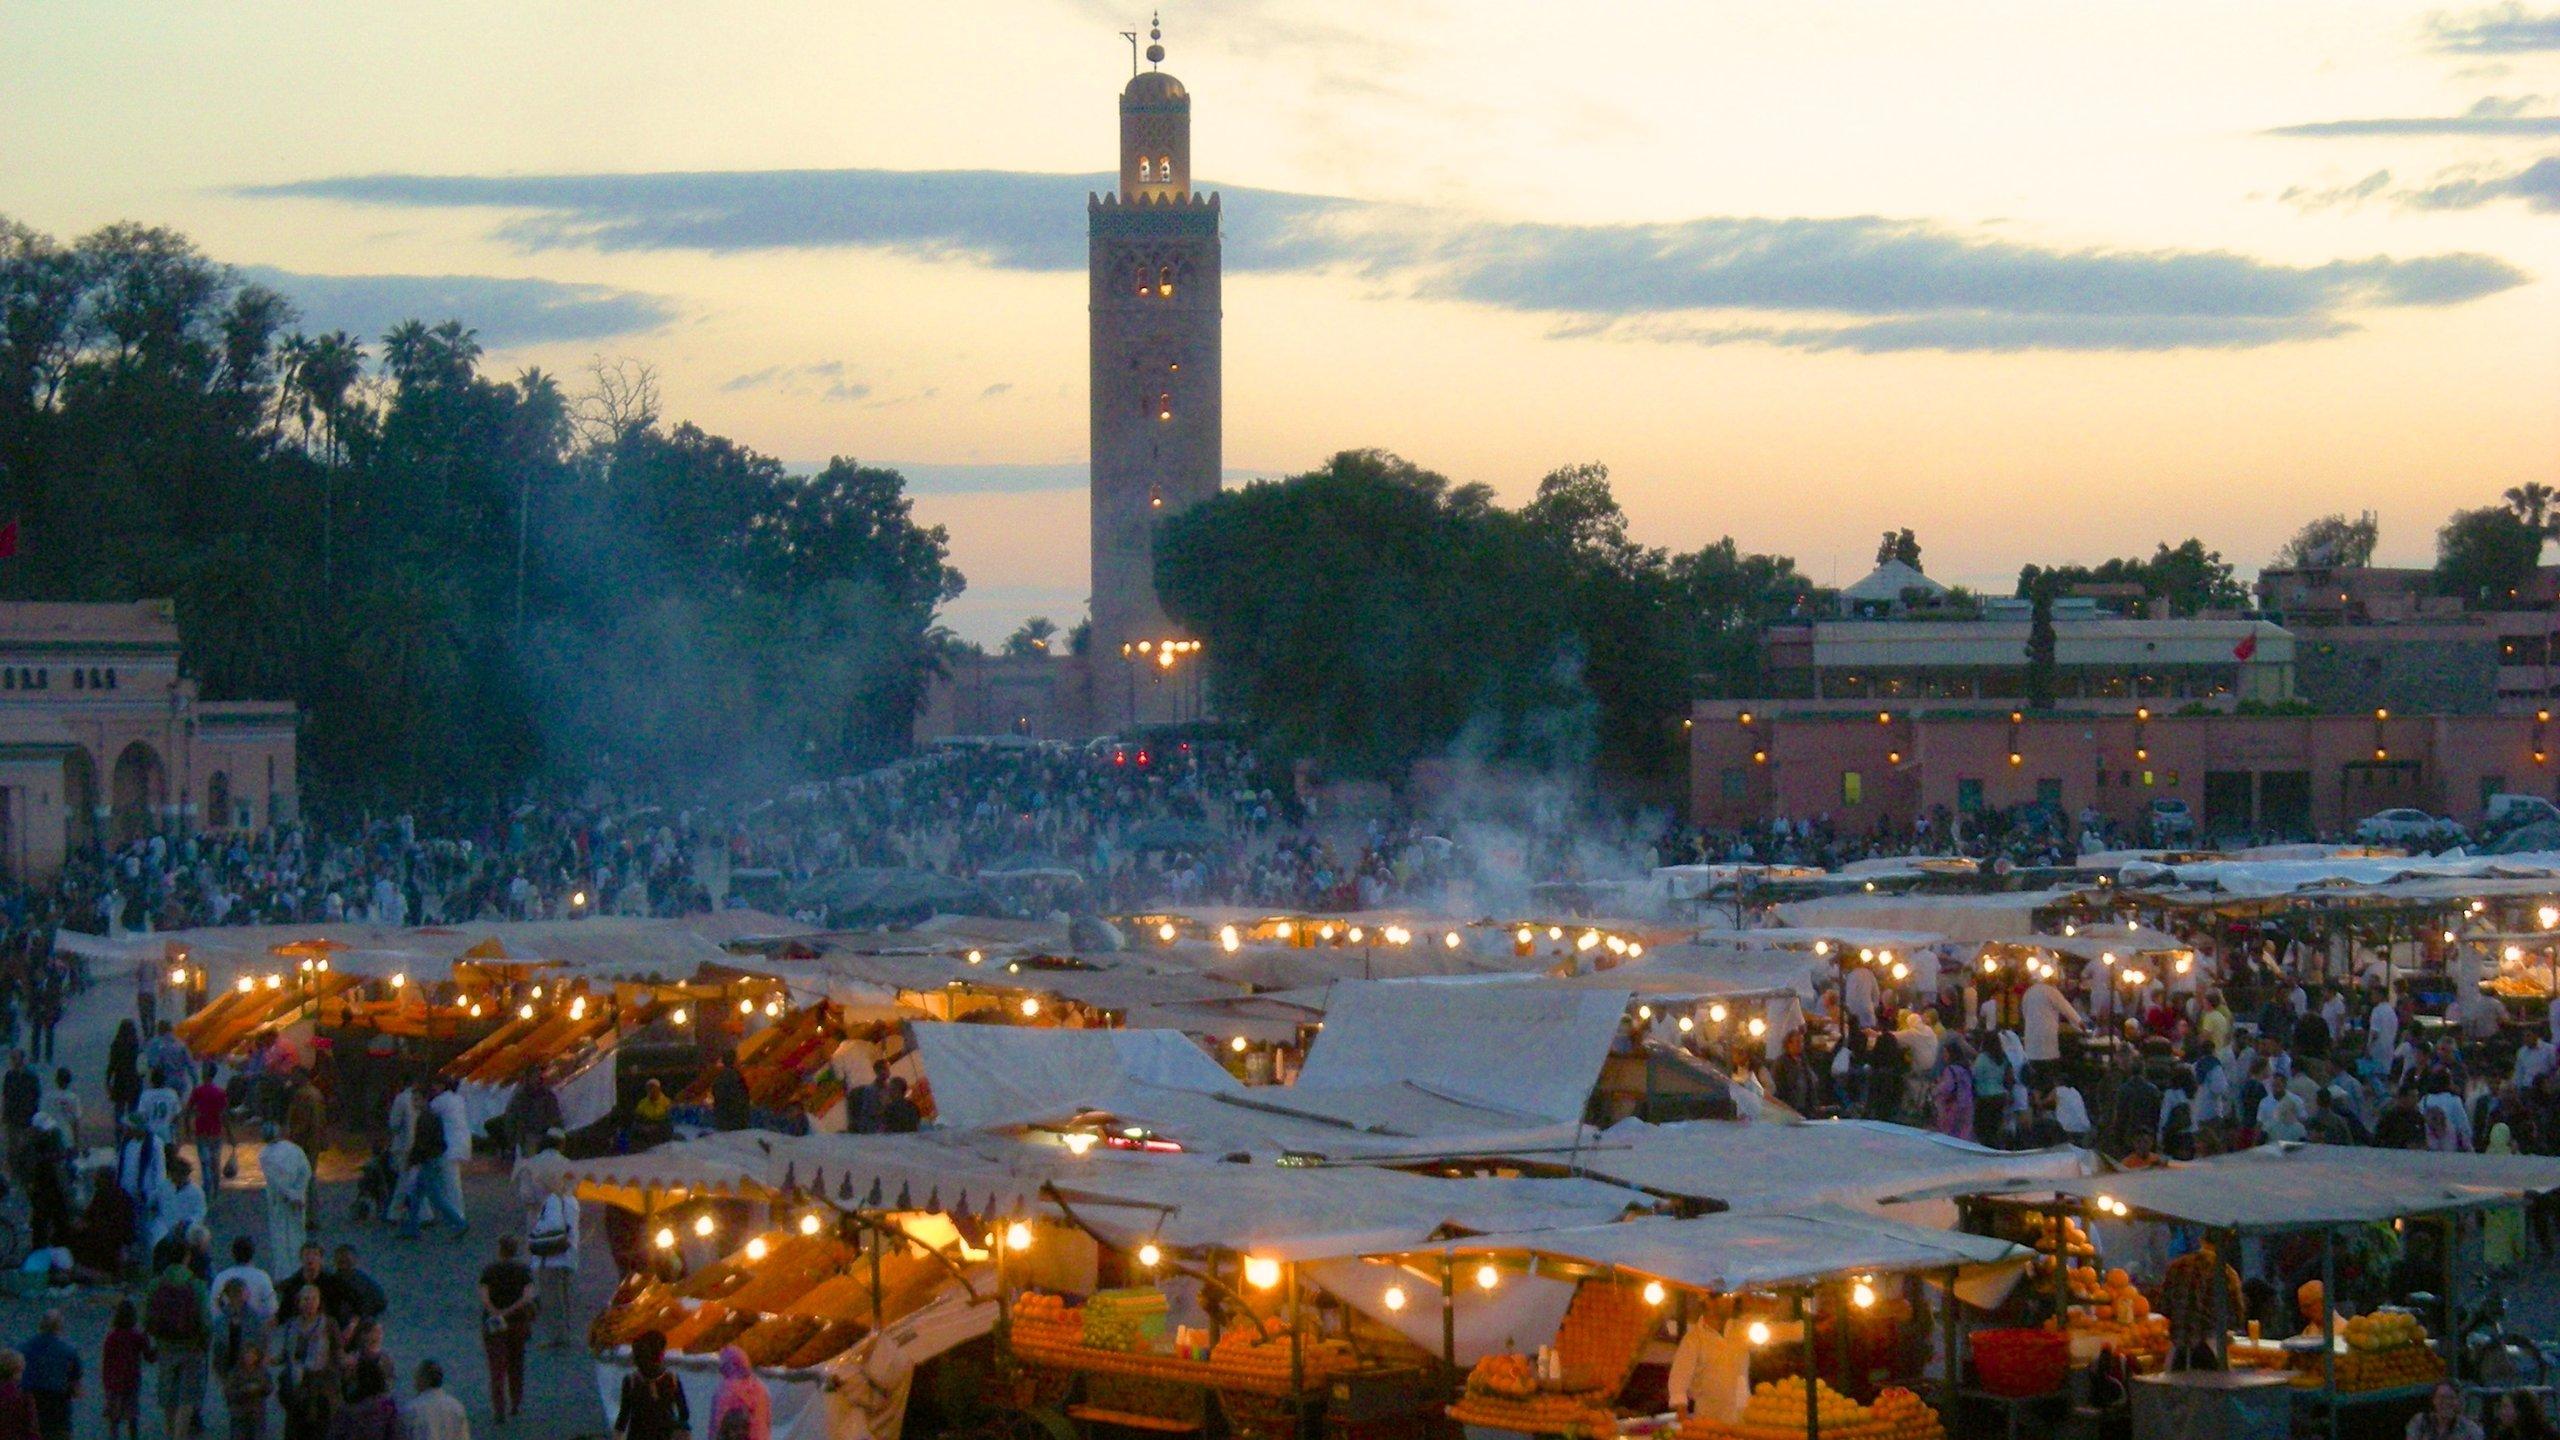 Visit Marrakesh